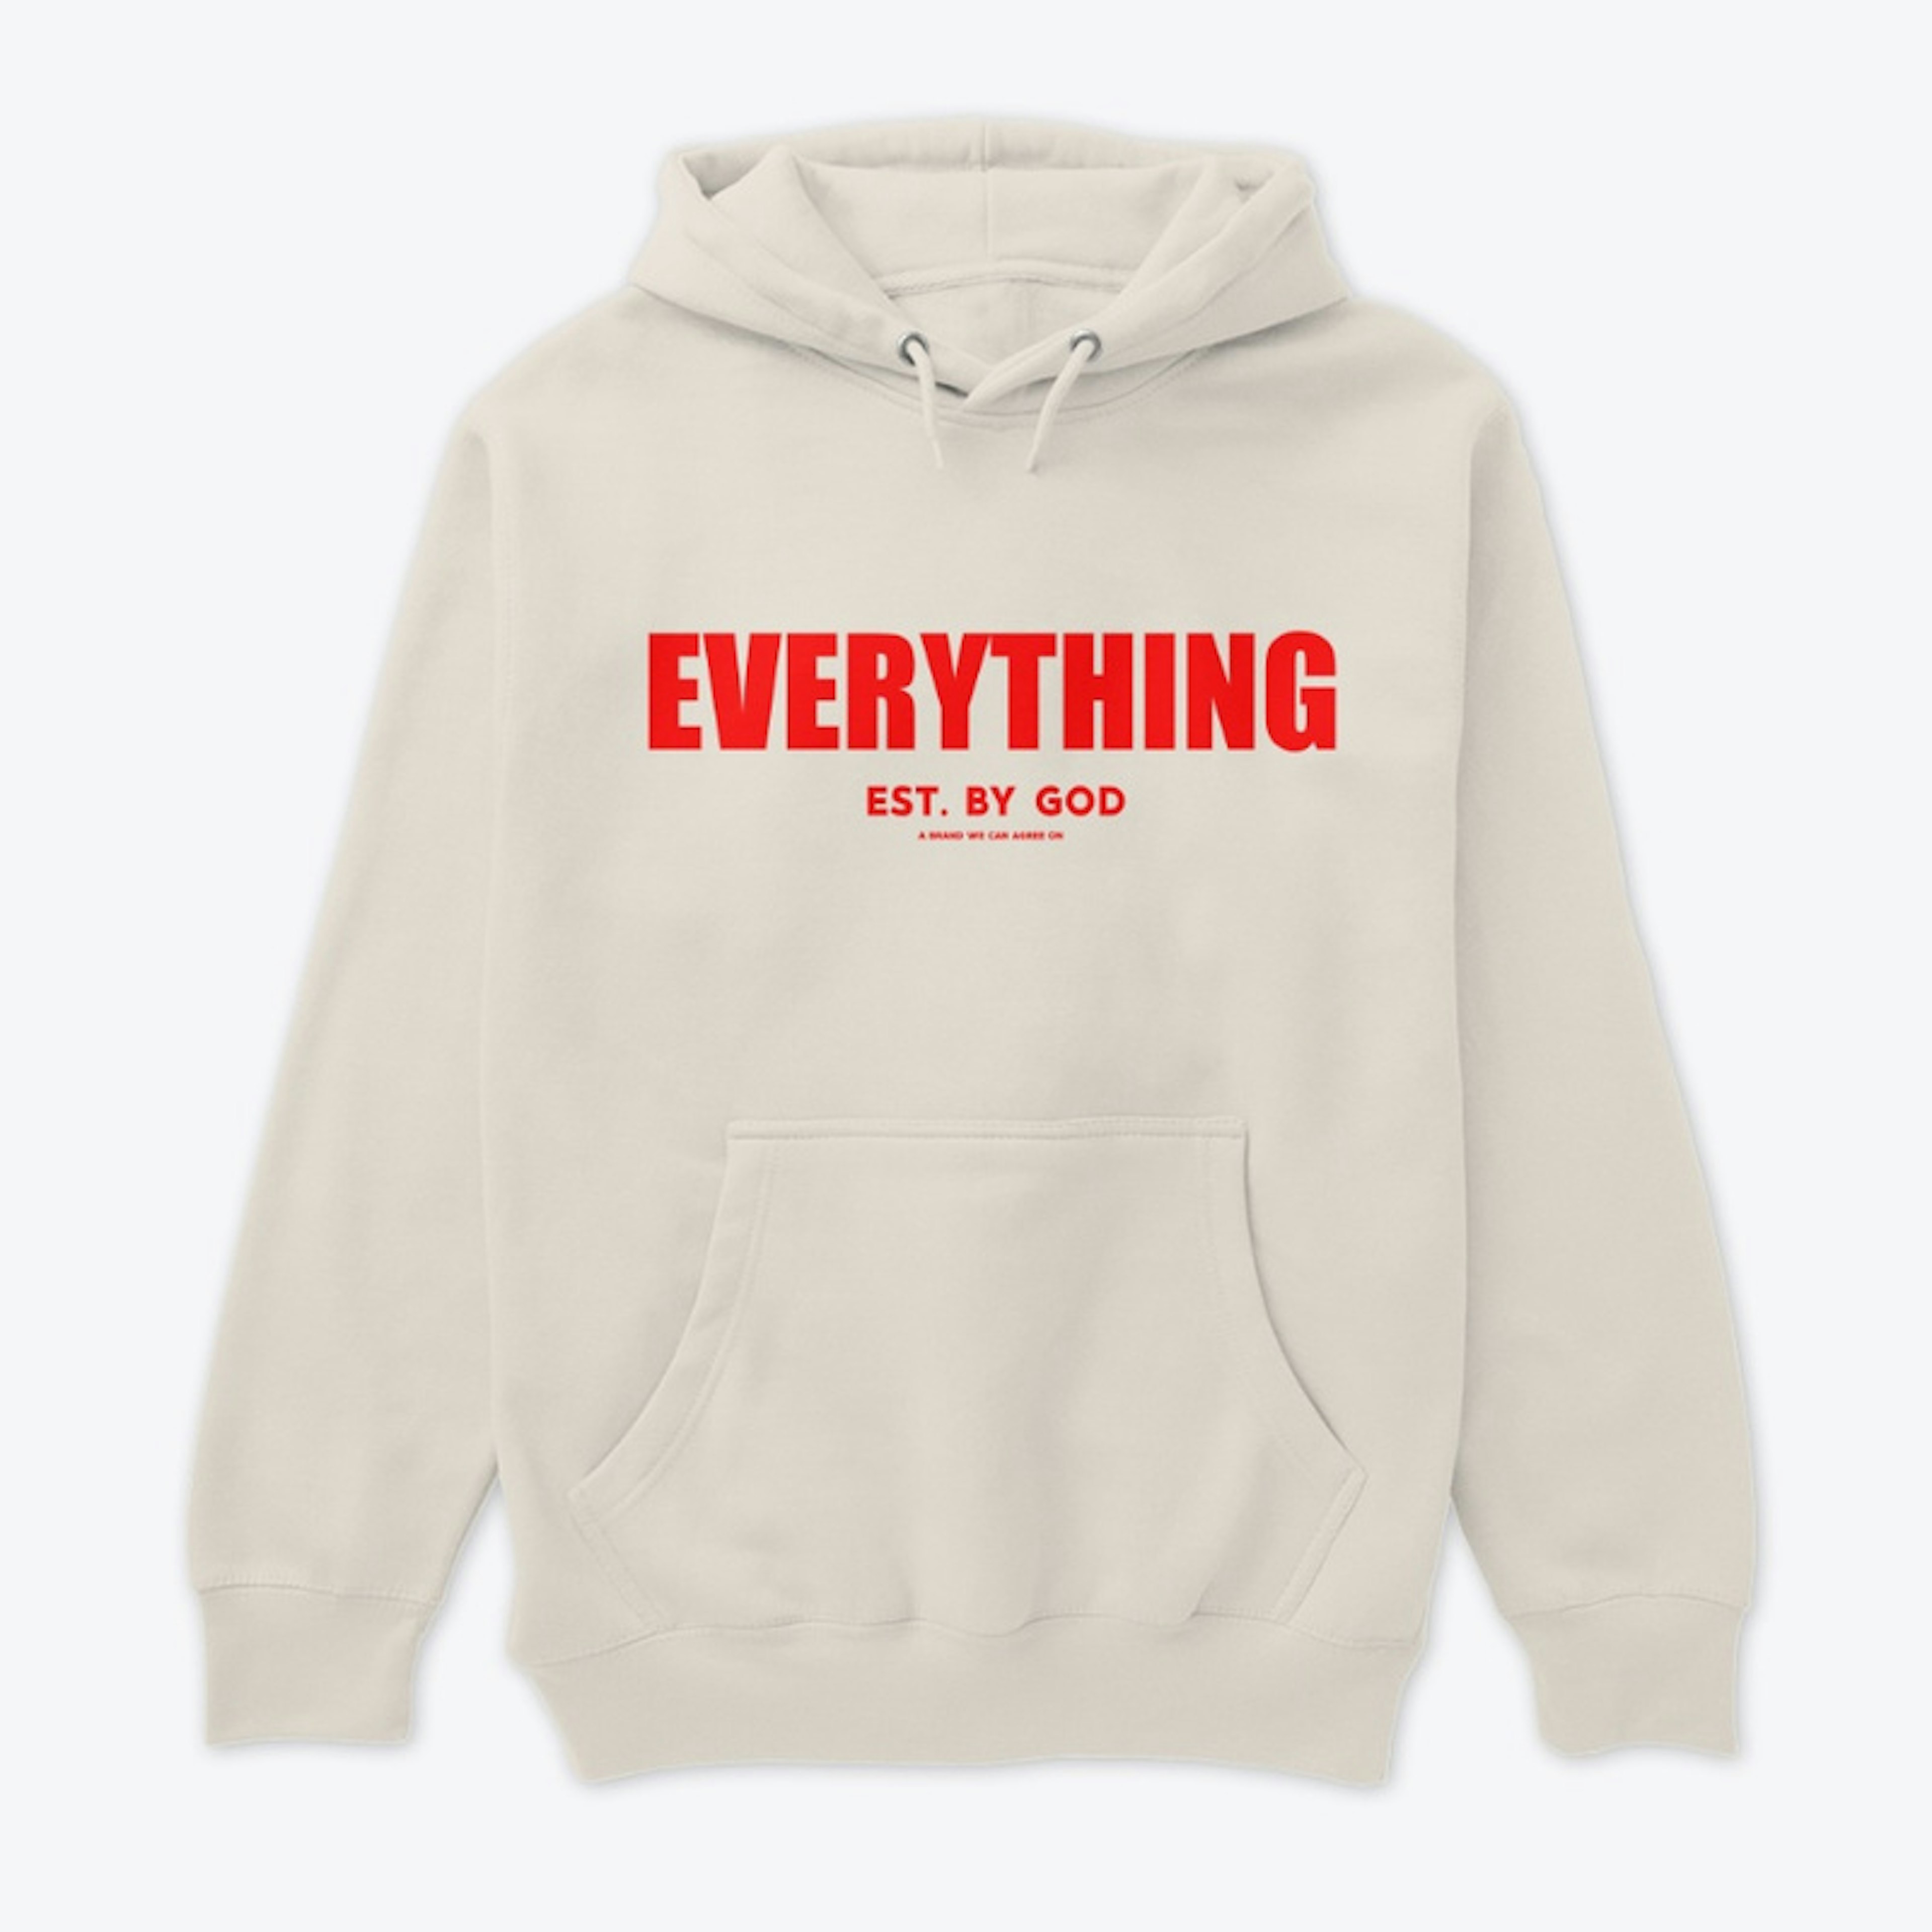 Everything EBG